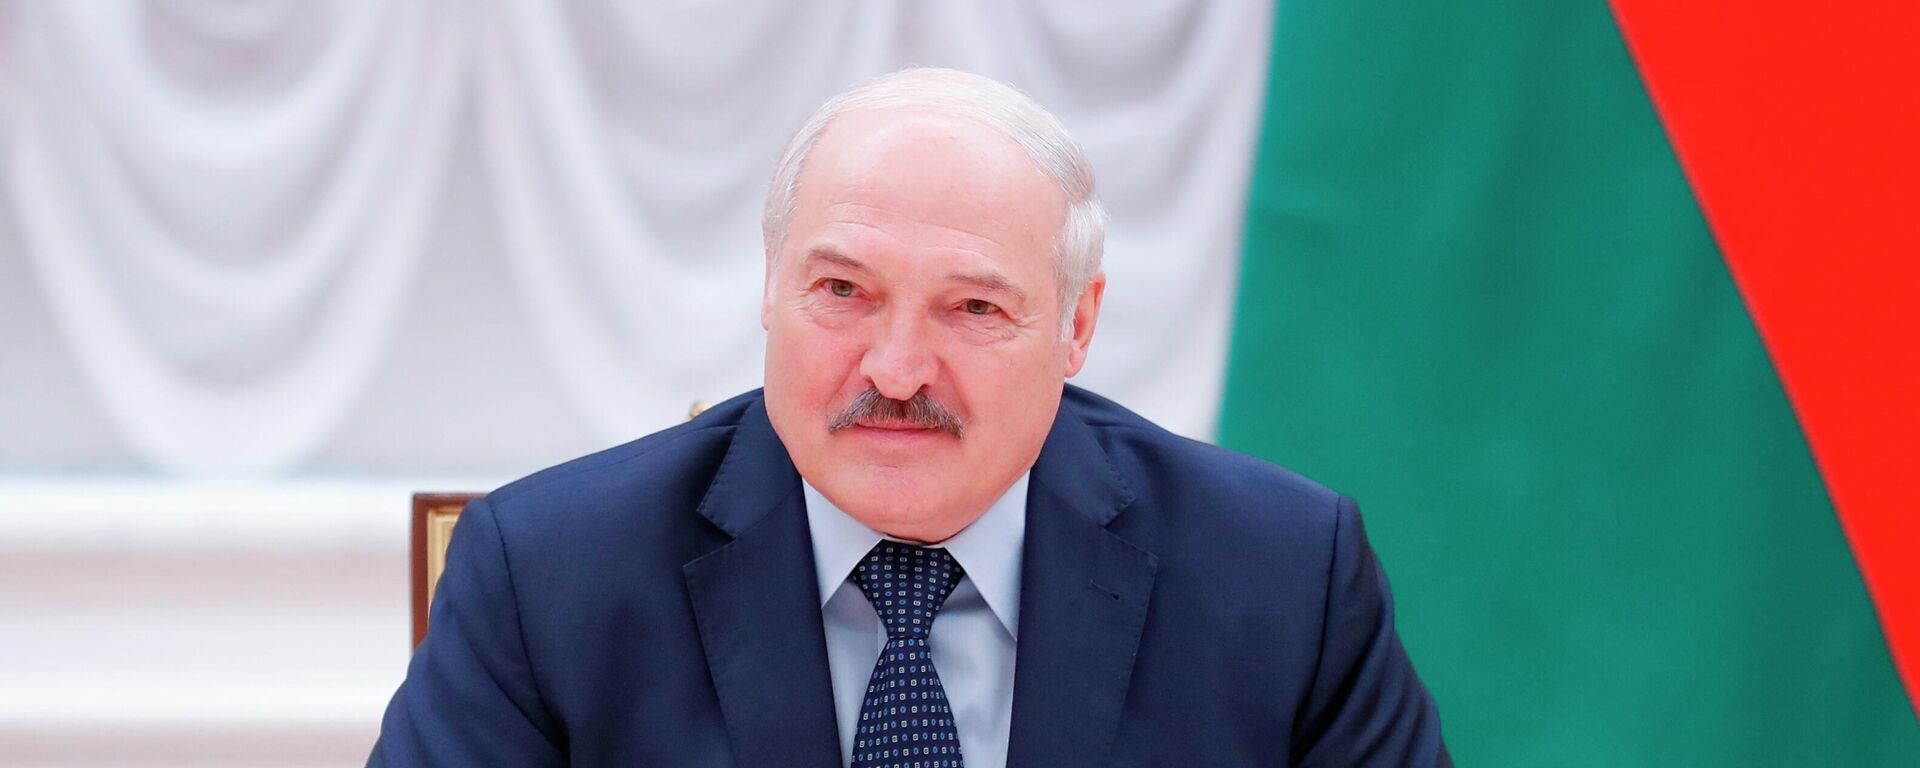 Alexandr Lukashenko, presidente de Bielorrusia - Sputnik Mundo, 1920, 02.10.2021